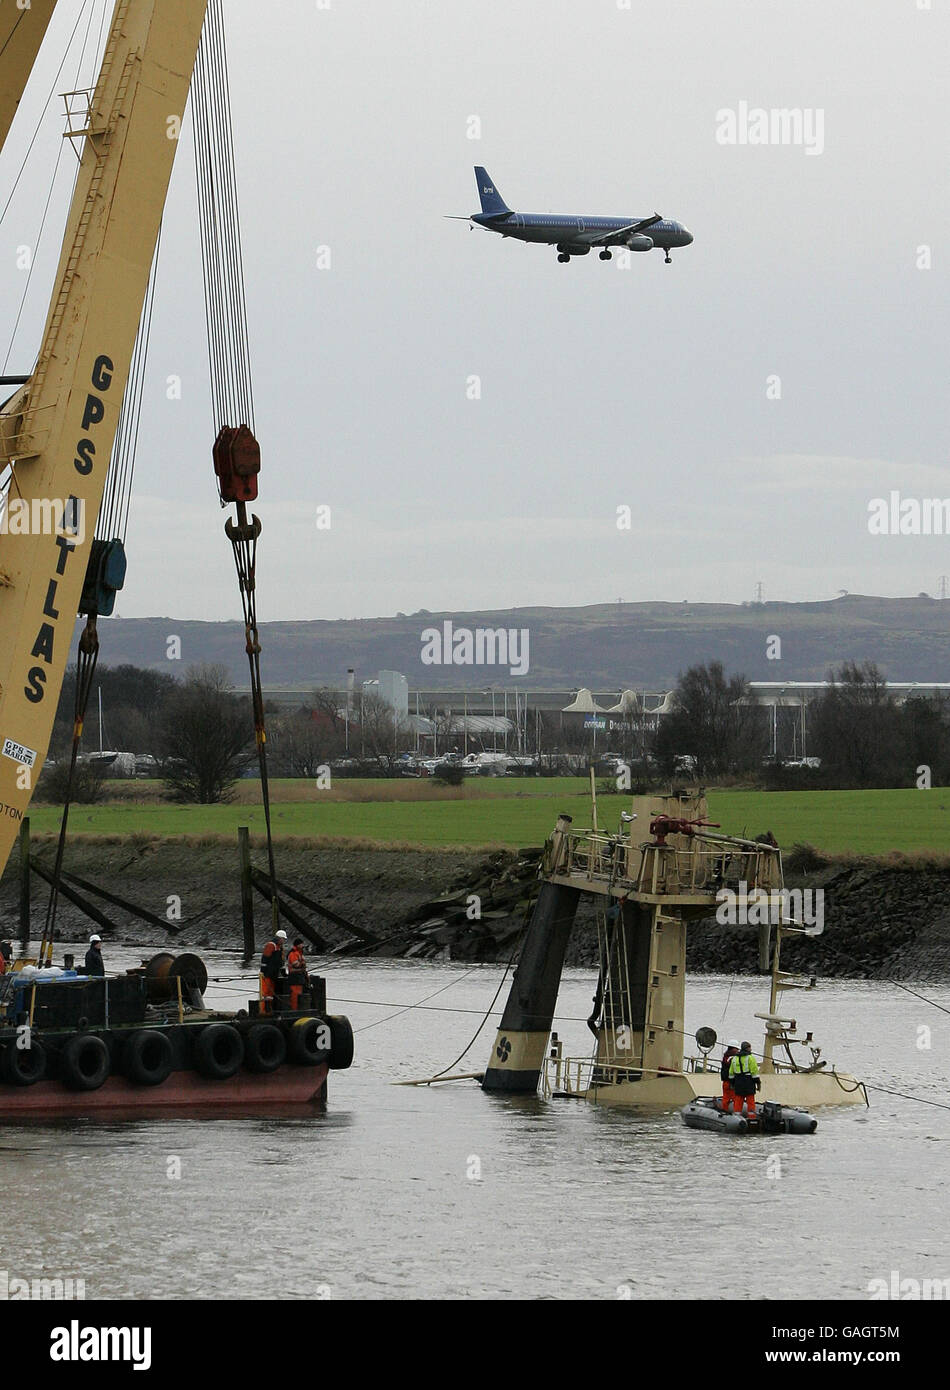 Die Spitze des Flying Phantom Tug ist sichtbar, wie die Barge, GPS Atlas,  die in der Lage ist, 400 Tonnen heben, seinen Bergungsbetrieb auf dem Fluss  Clyde fortsetzt Stockfotografie - Alamy